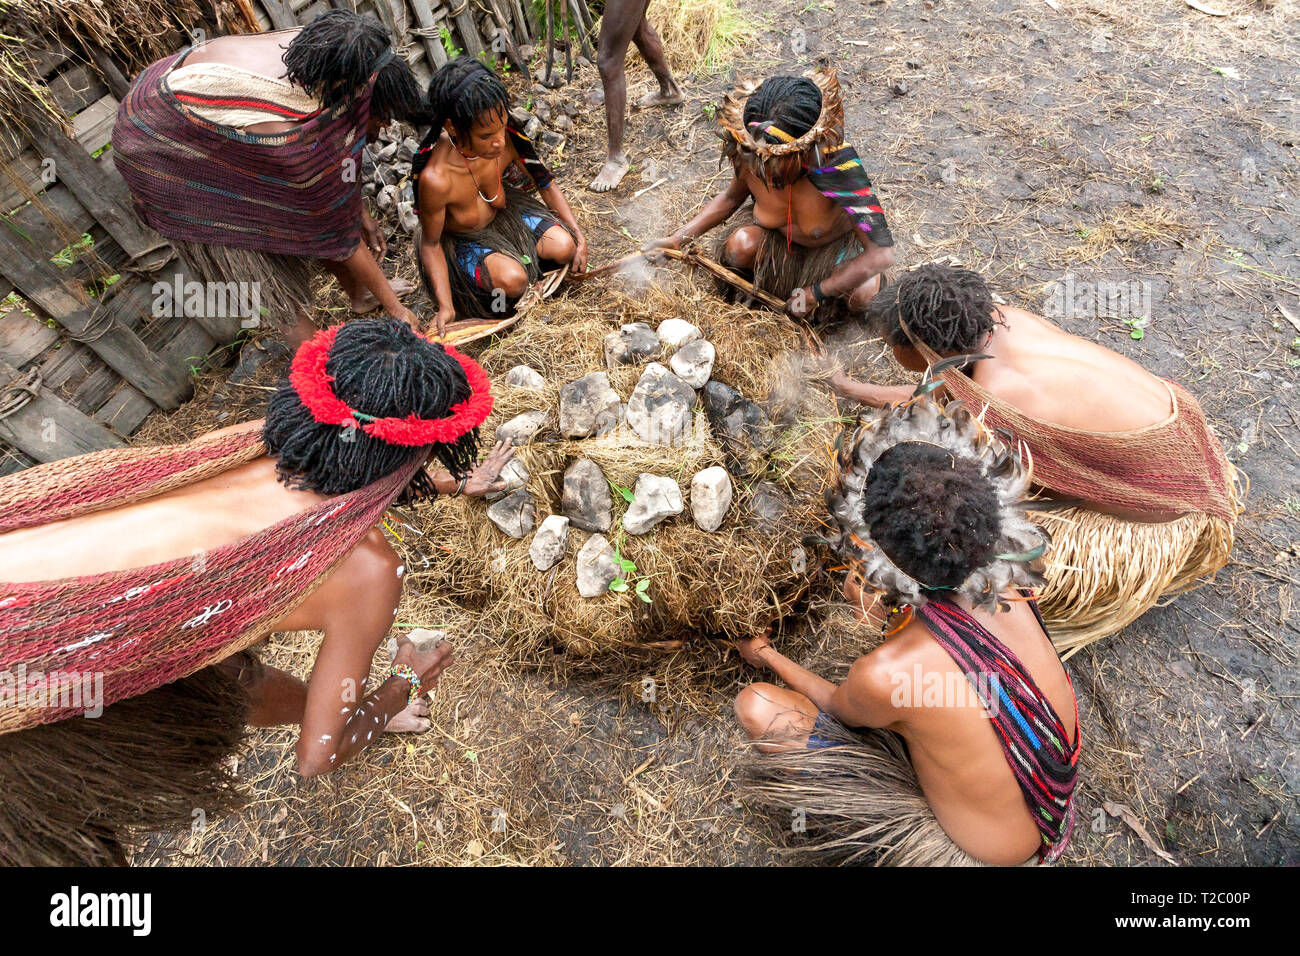 Wamena, Indonesien - Januar 9, 2010: Dani Frauen kochen in ein Loch mit heißen Steinen gefüllt. Das Baliem Valley, Papua Neu Guinea. Stockfoto